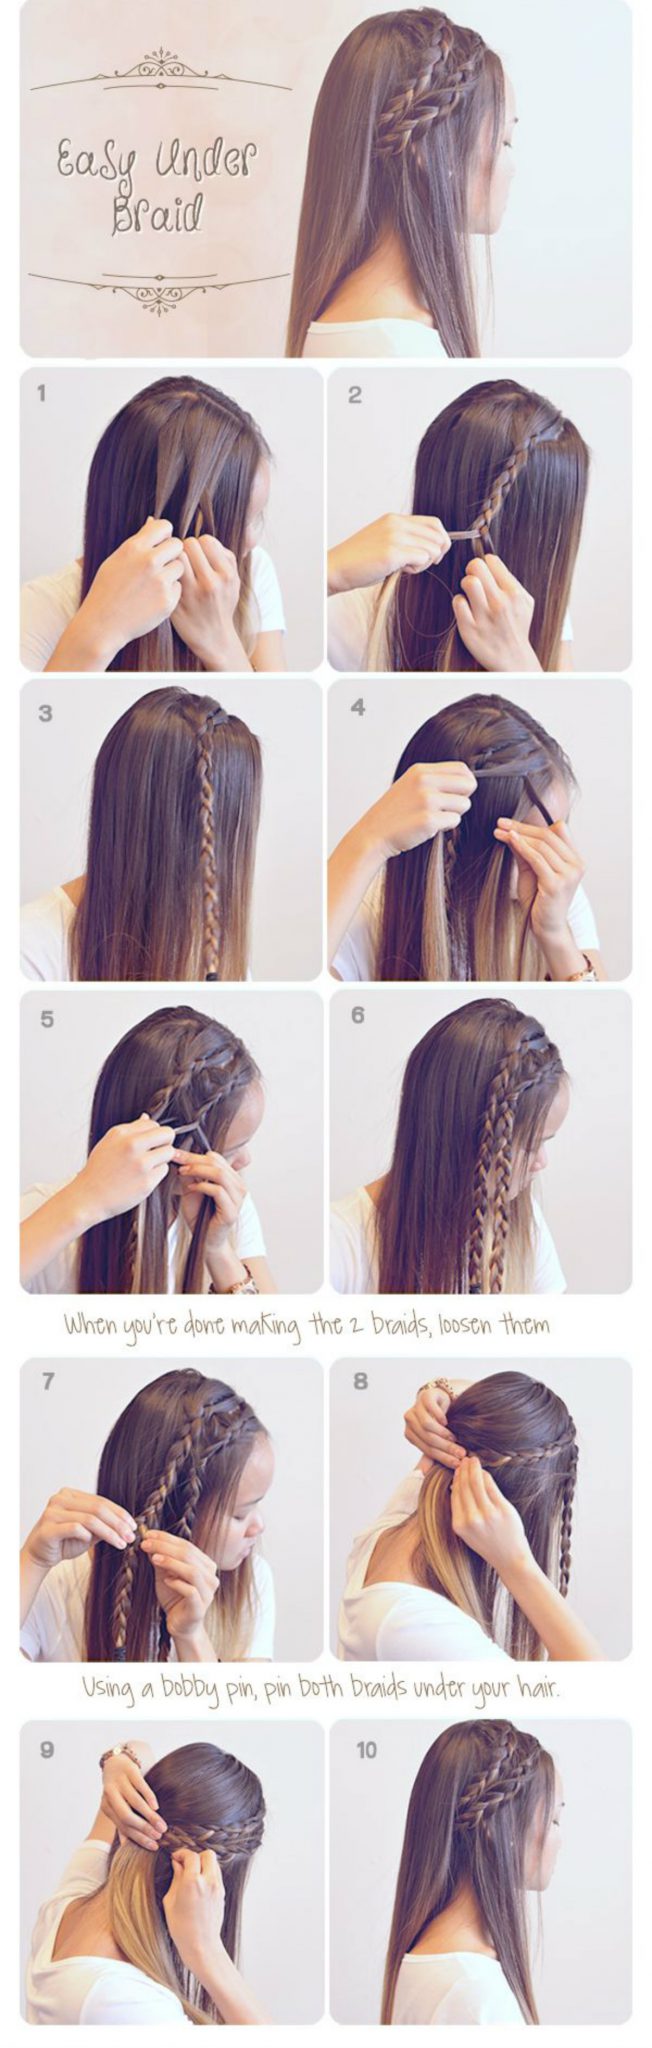 Как сделать красивую прическу, если у вас короткие волосы?